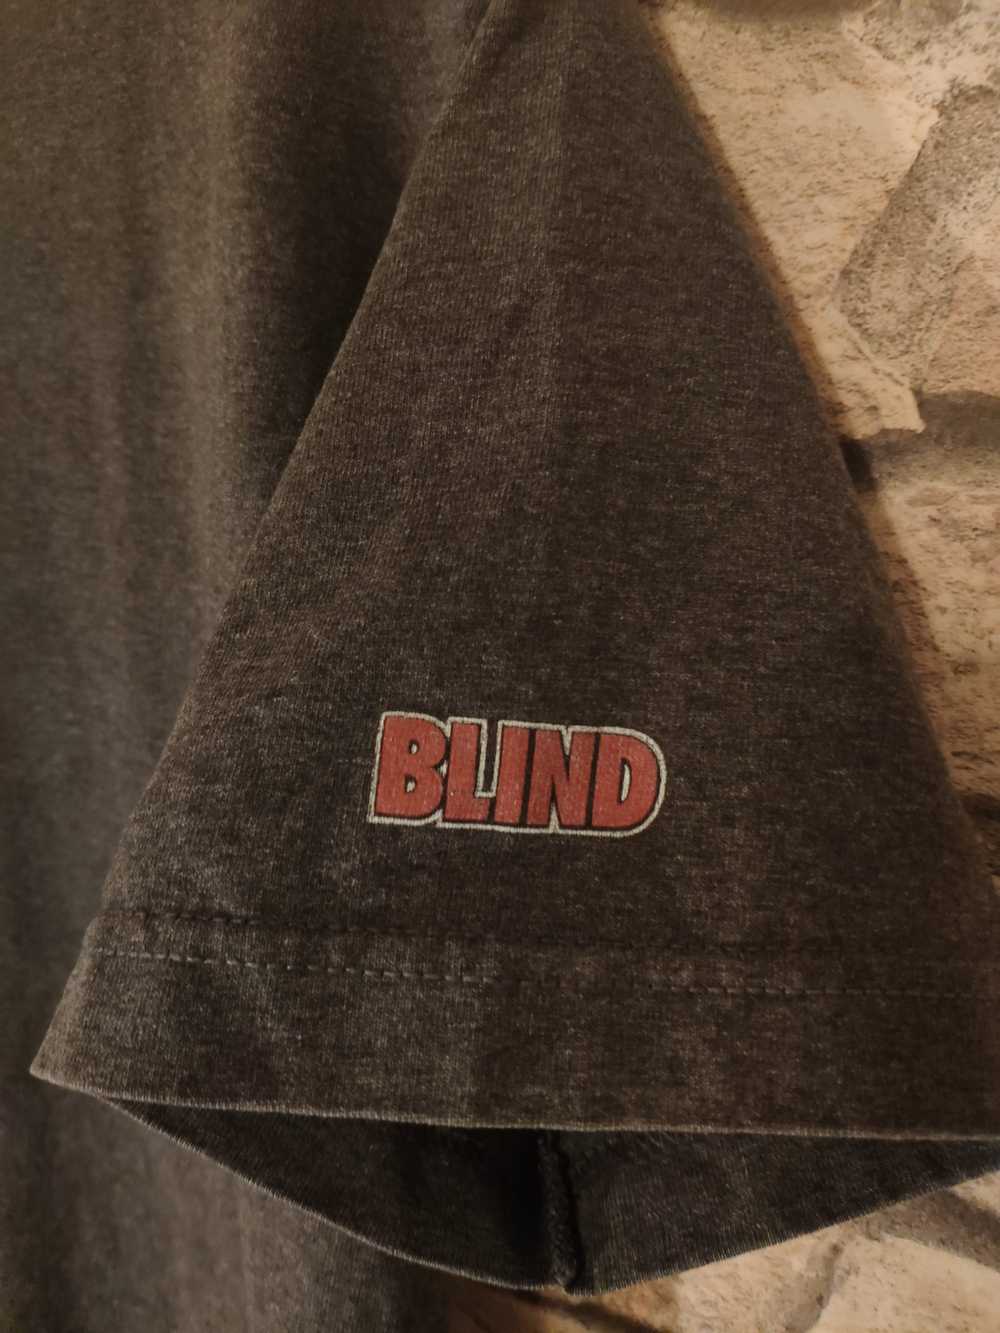 Only The Blind × Vintage FINALDROP 90s Vintage Bl… - image 2